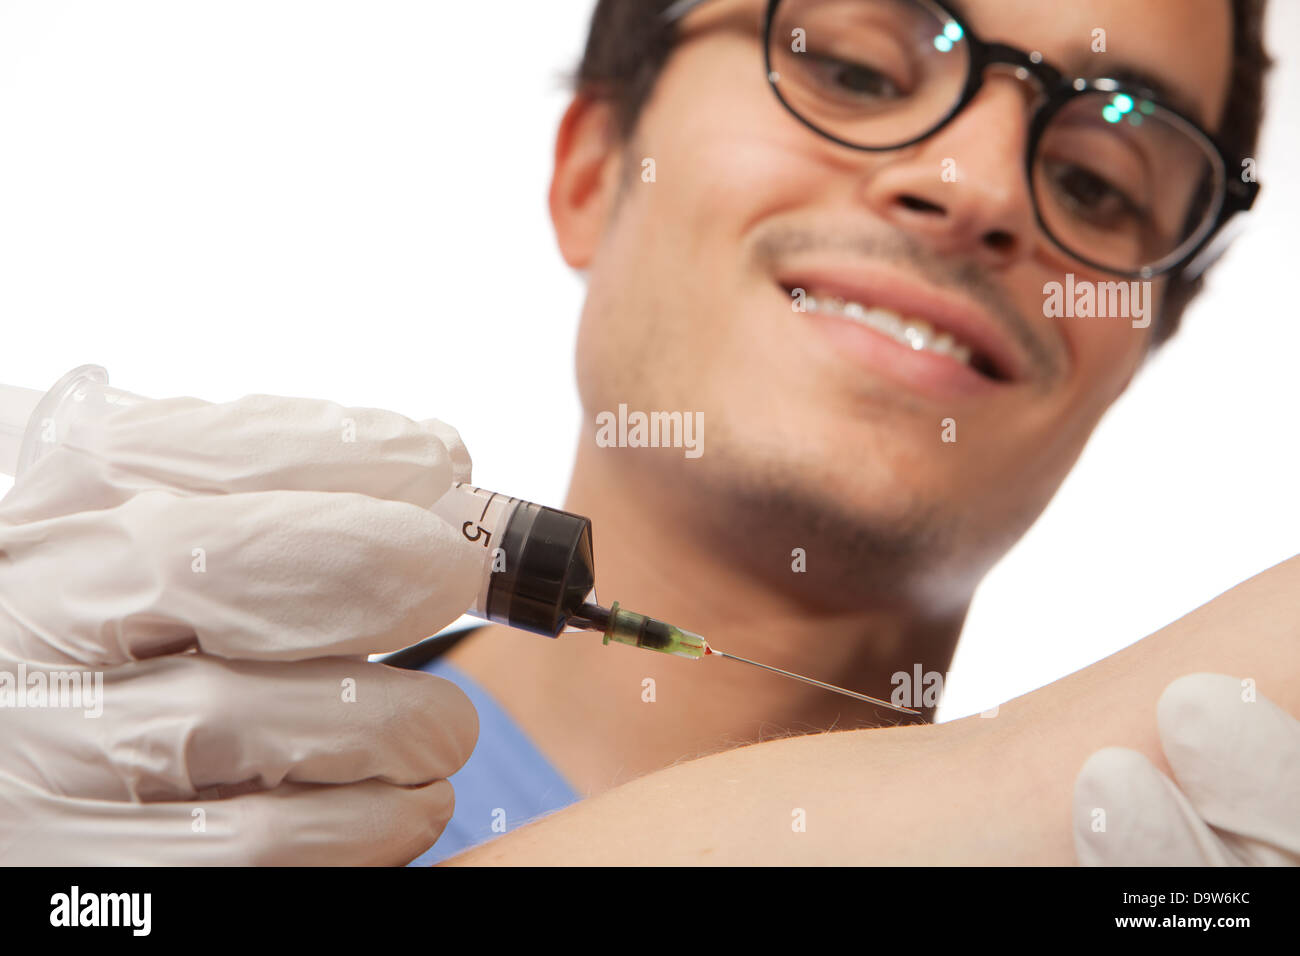 Männlichen Arzt Krankenschwester unter Blutprobe mit Nadel und Spritze Stockfoto